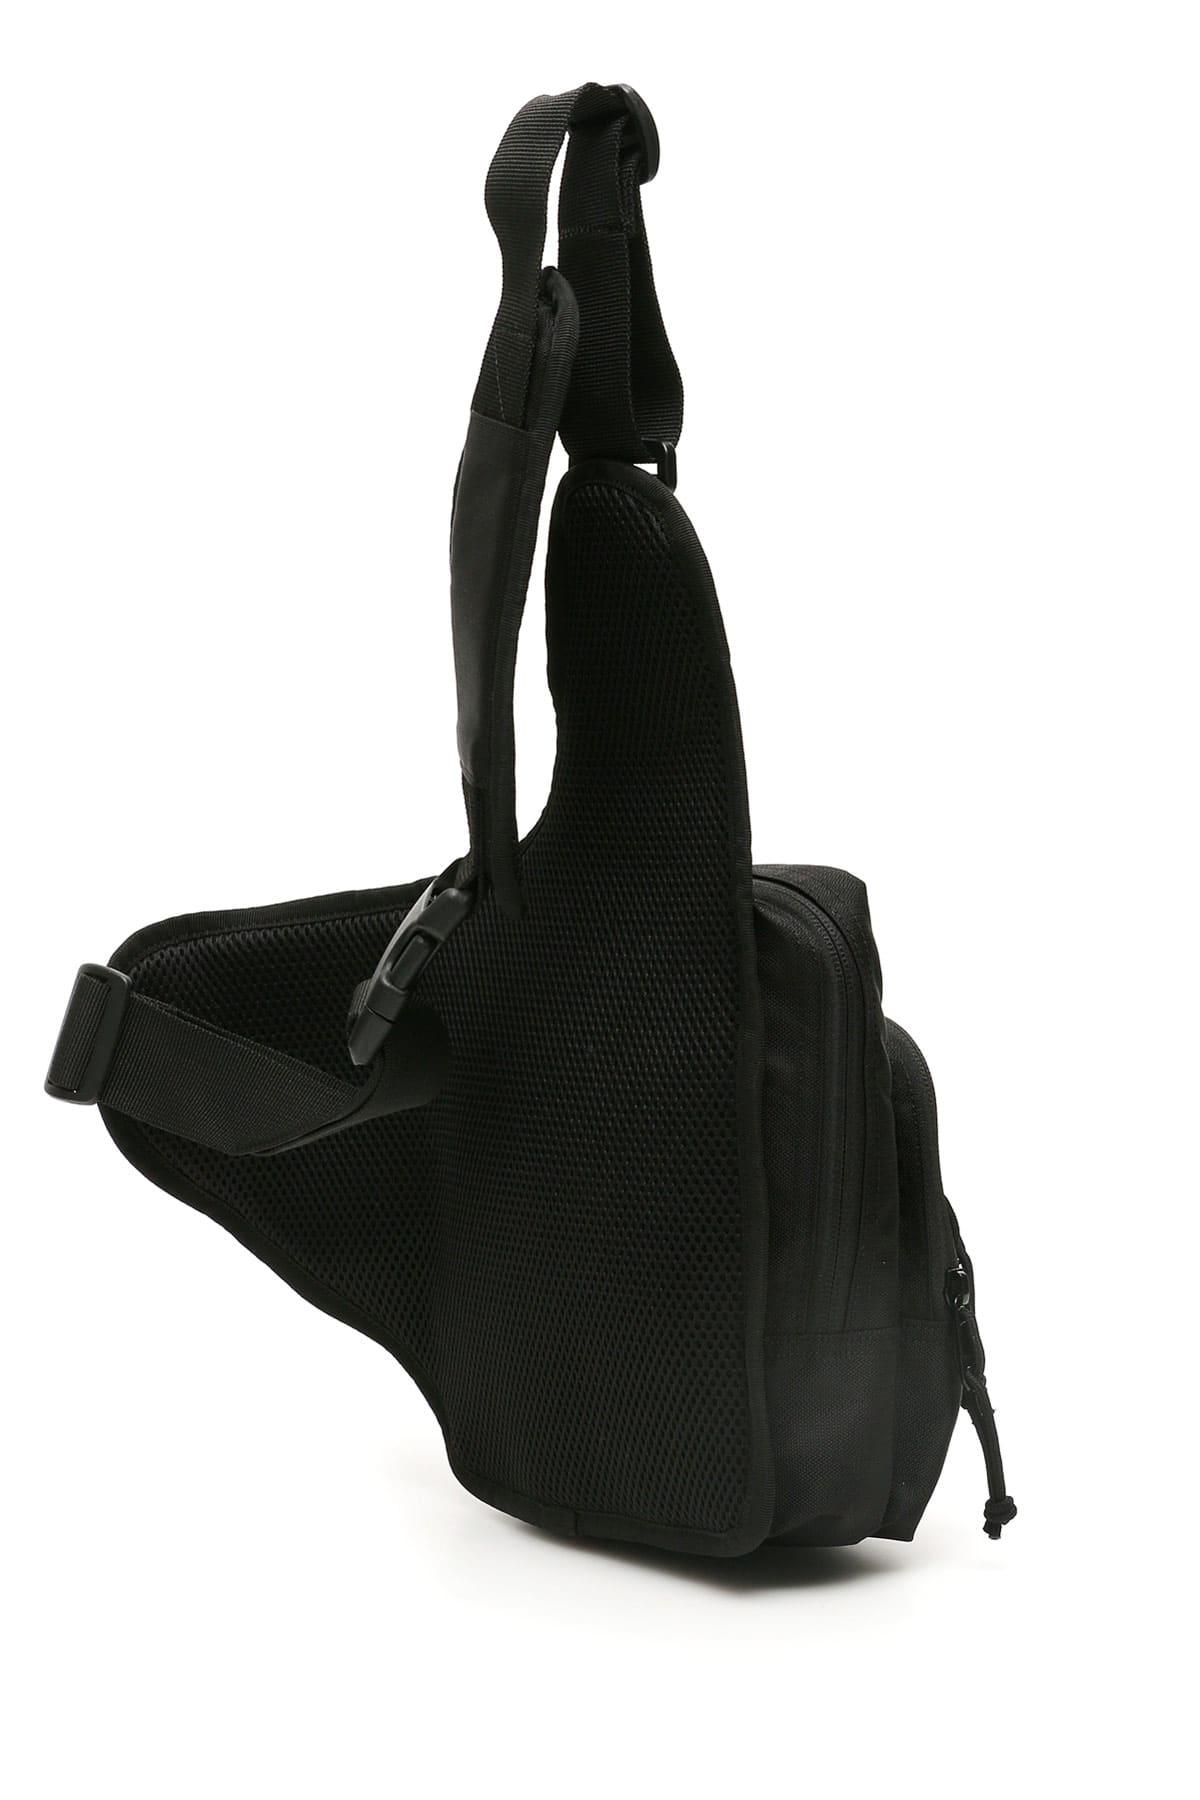 Carhartt Delta Backpack - Black